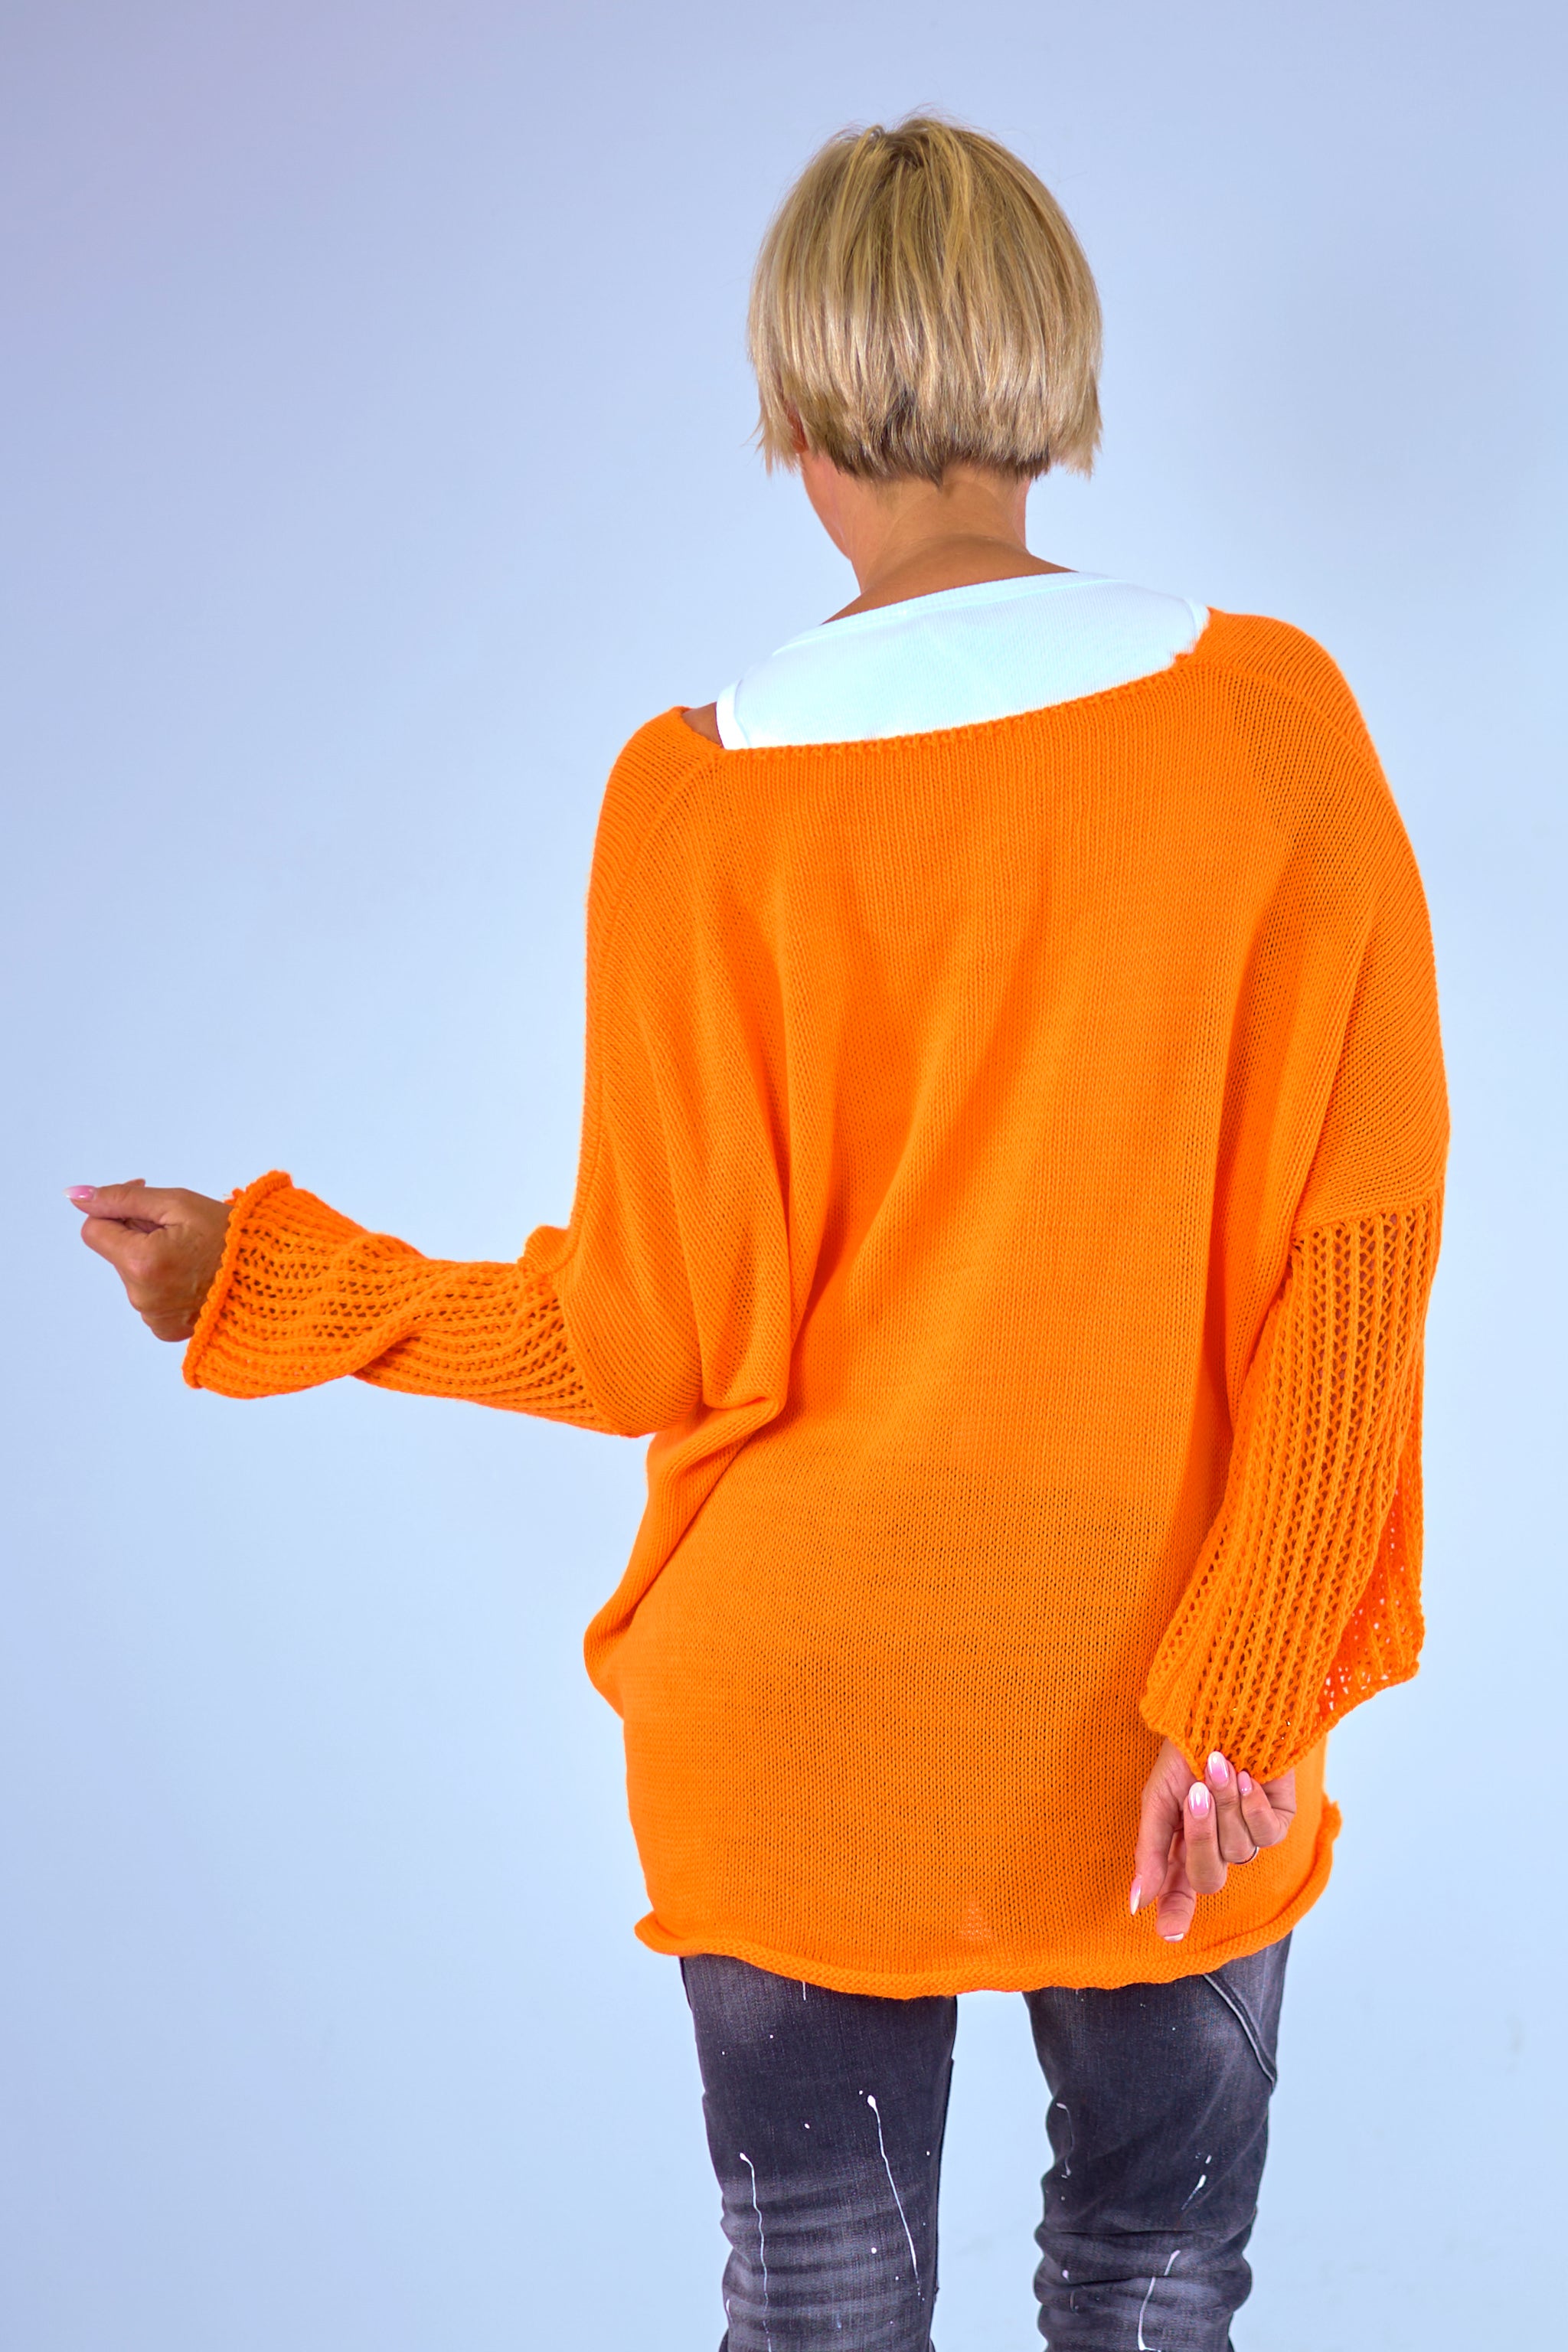 Knitted sweater "Skull", orange